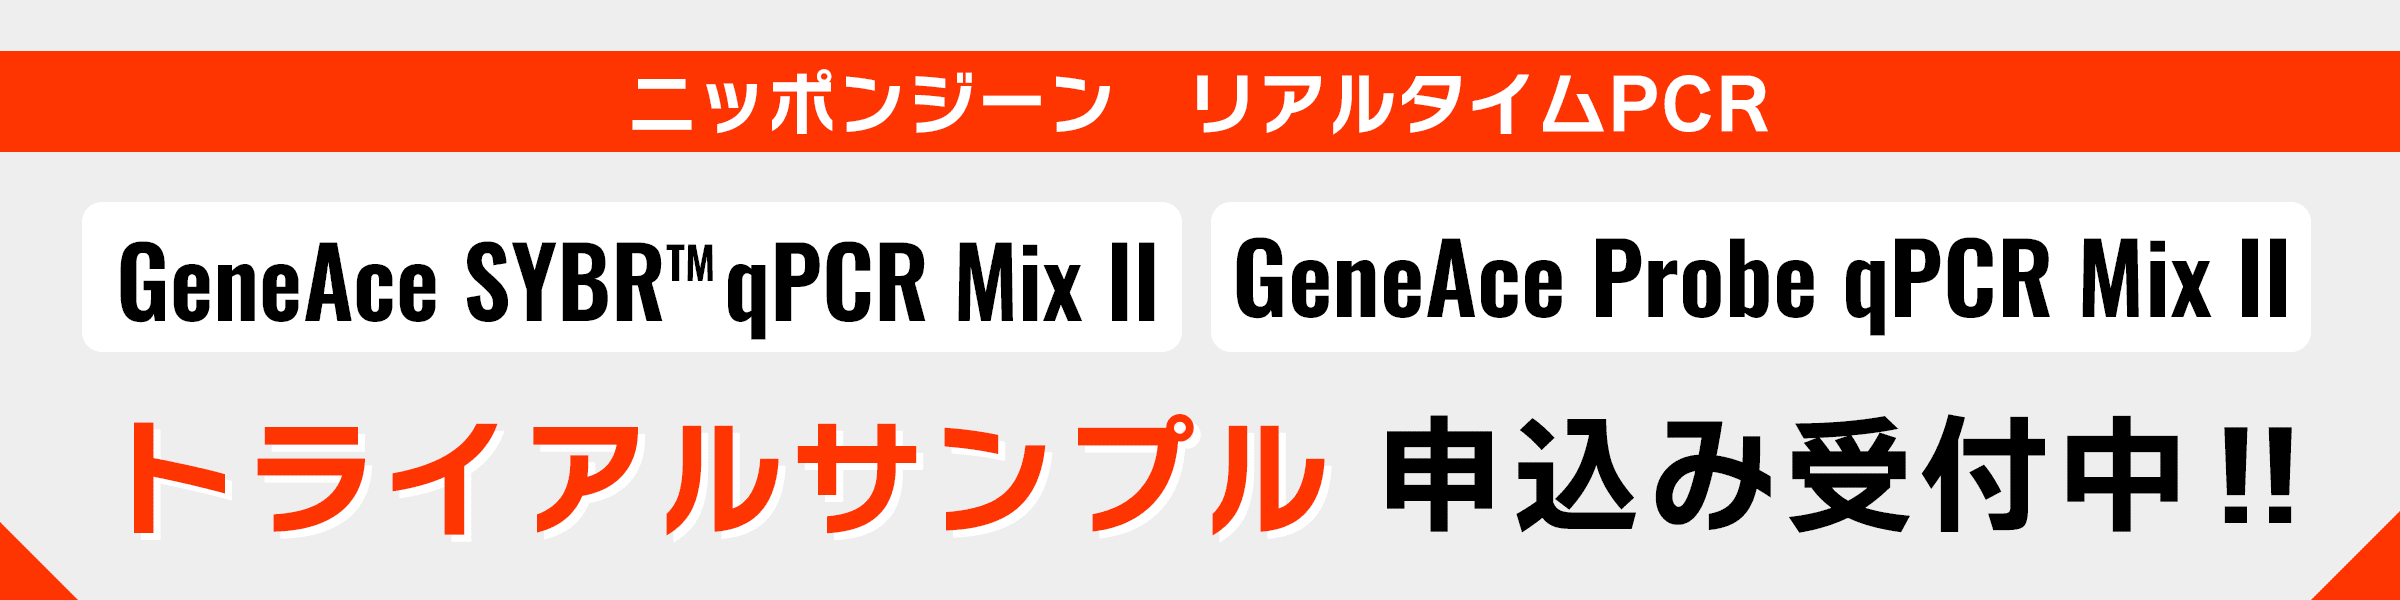 ニッポンジーン リアルタイムPCR Mixシリーズ トライアルサンプル申し込みフォーム